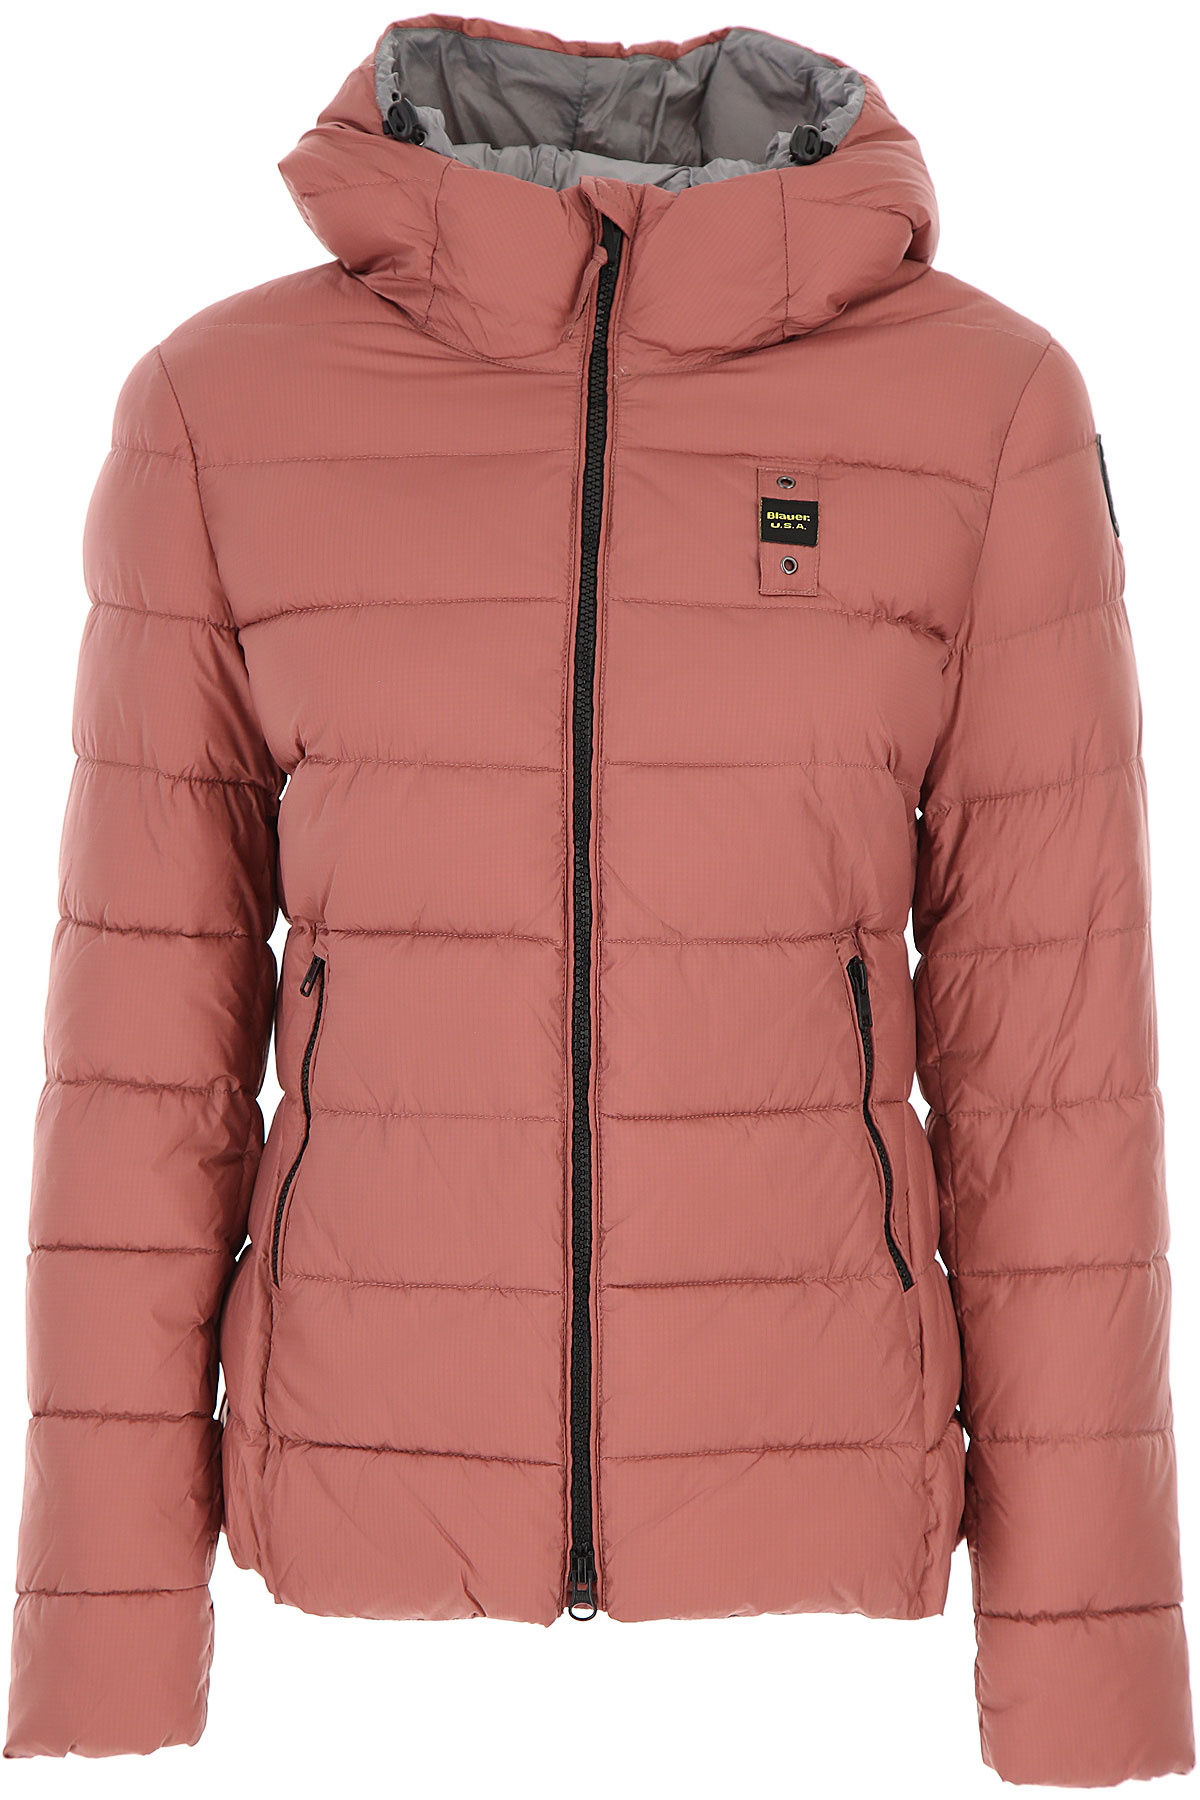 Blauer Daunenjacke für Damen, wattierte Ski Jacke Günstig im Sale, Altrosa Pink, Polyester, 2017, 38 40